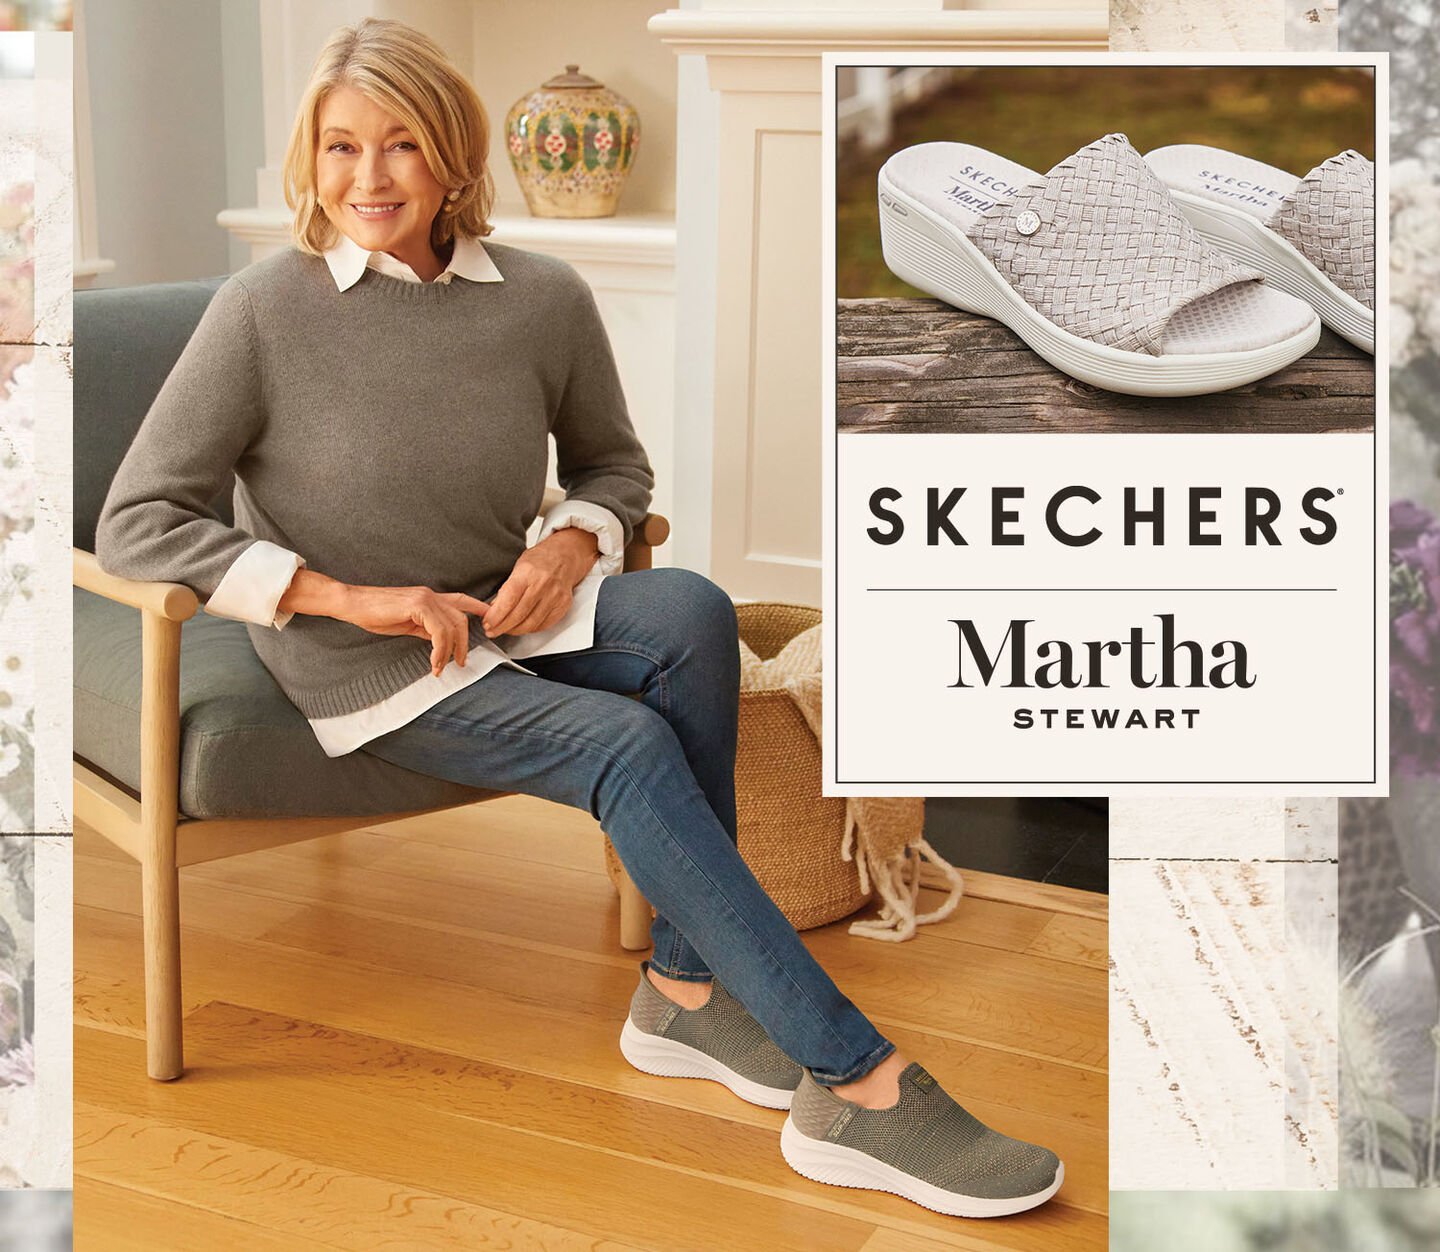 Skechers x Martha Stewart